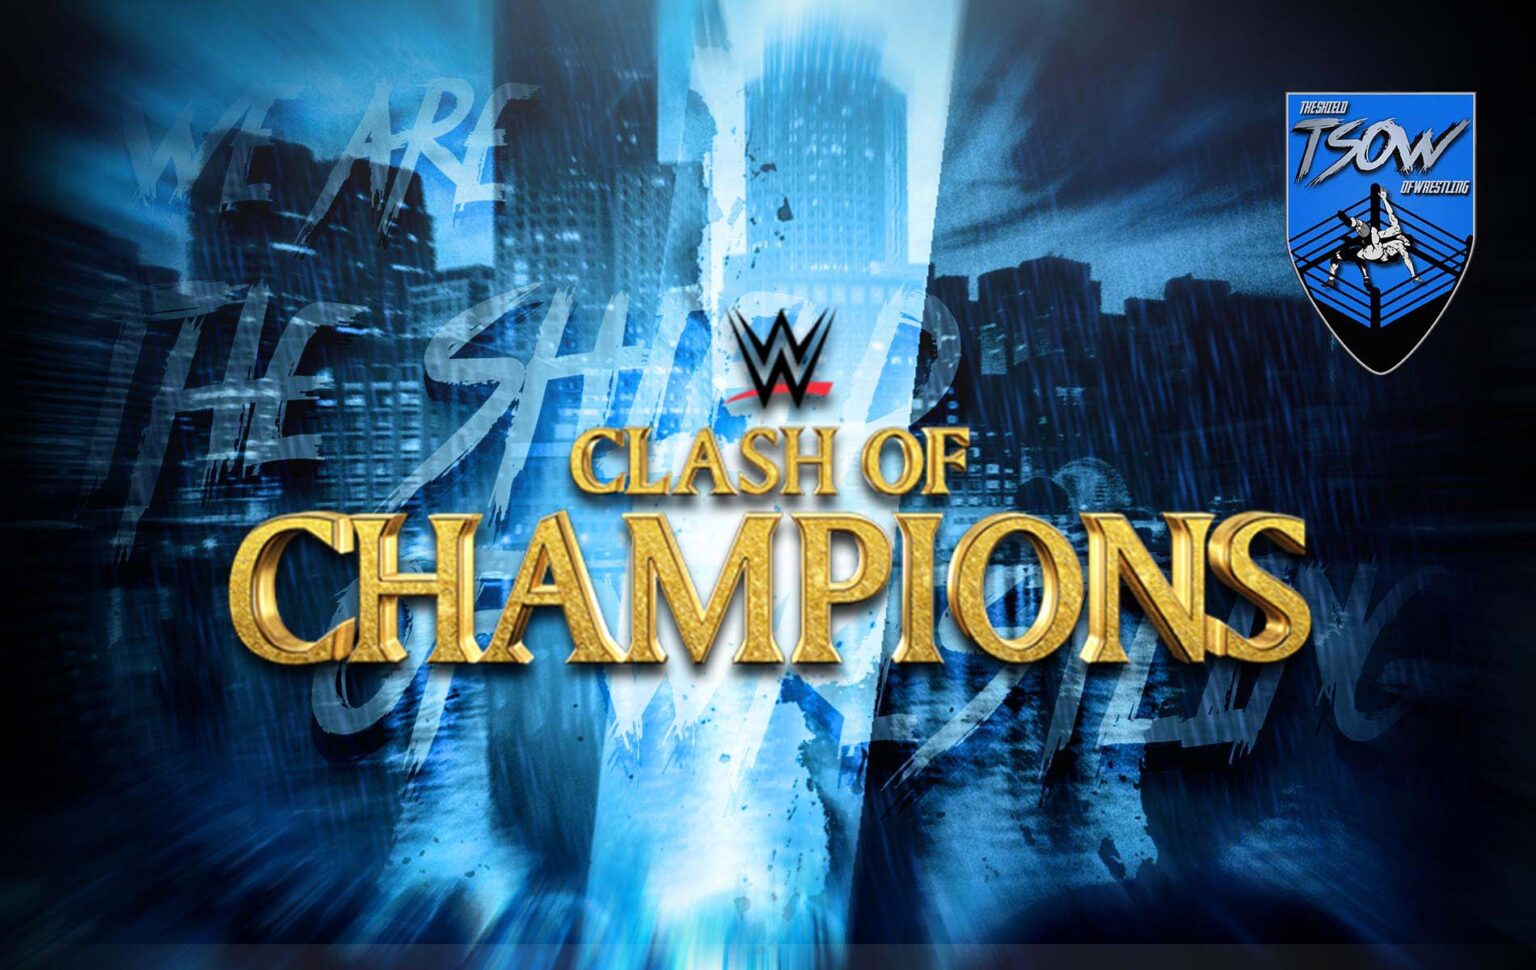 Clash of Champions la WWE ha introdotto un nuovo look al ThunderDome